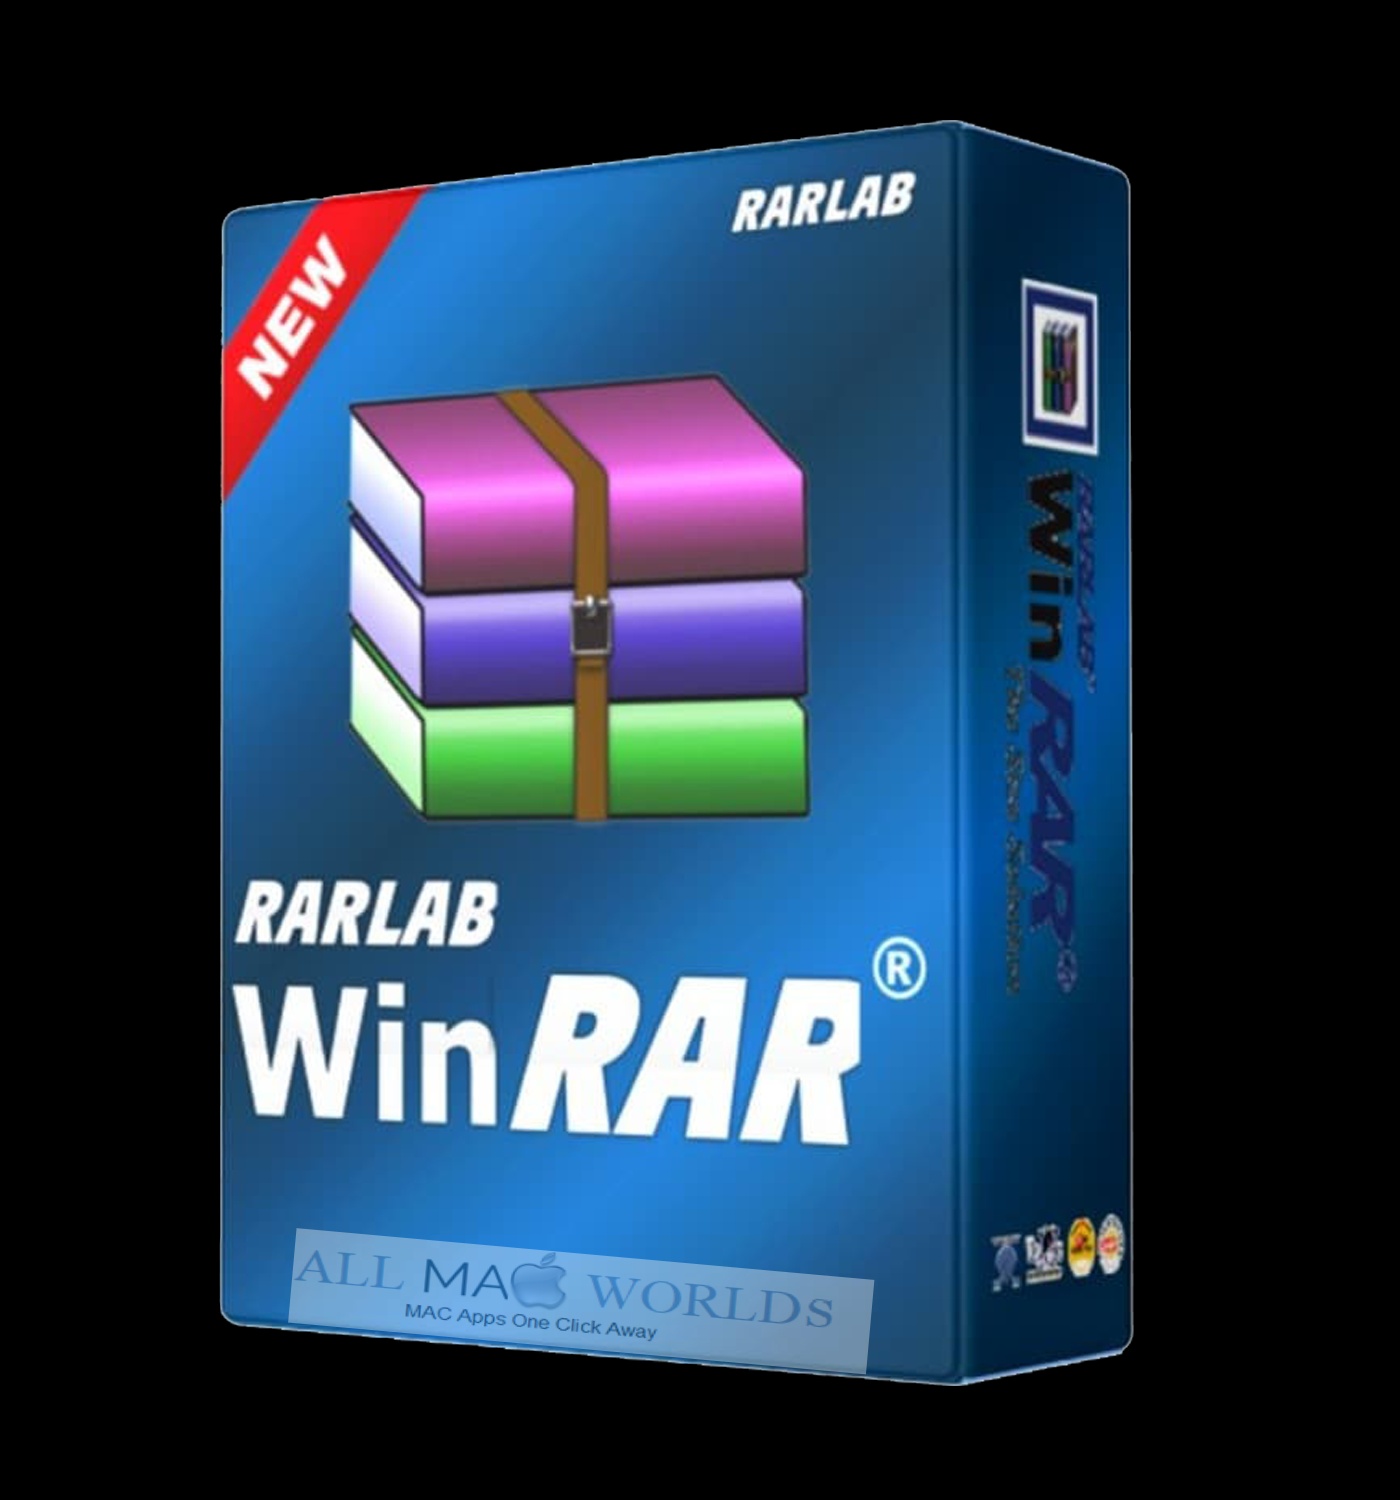 winrar rarlab com download htm